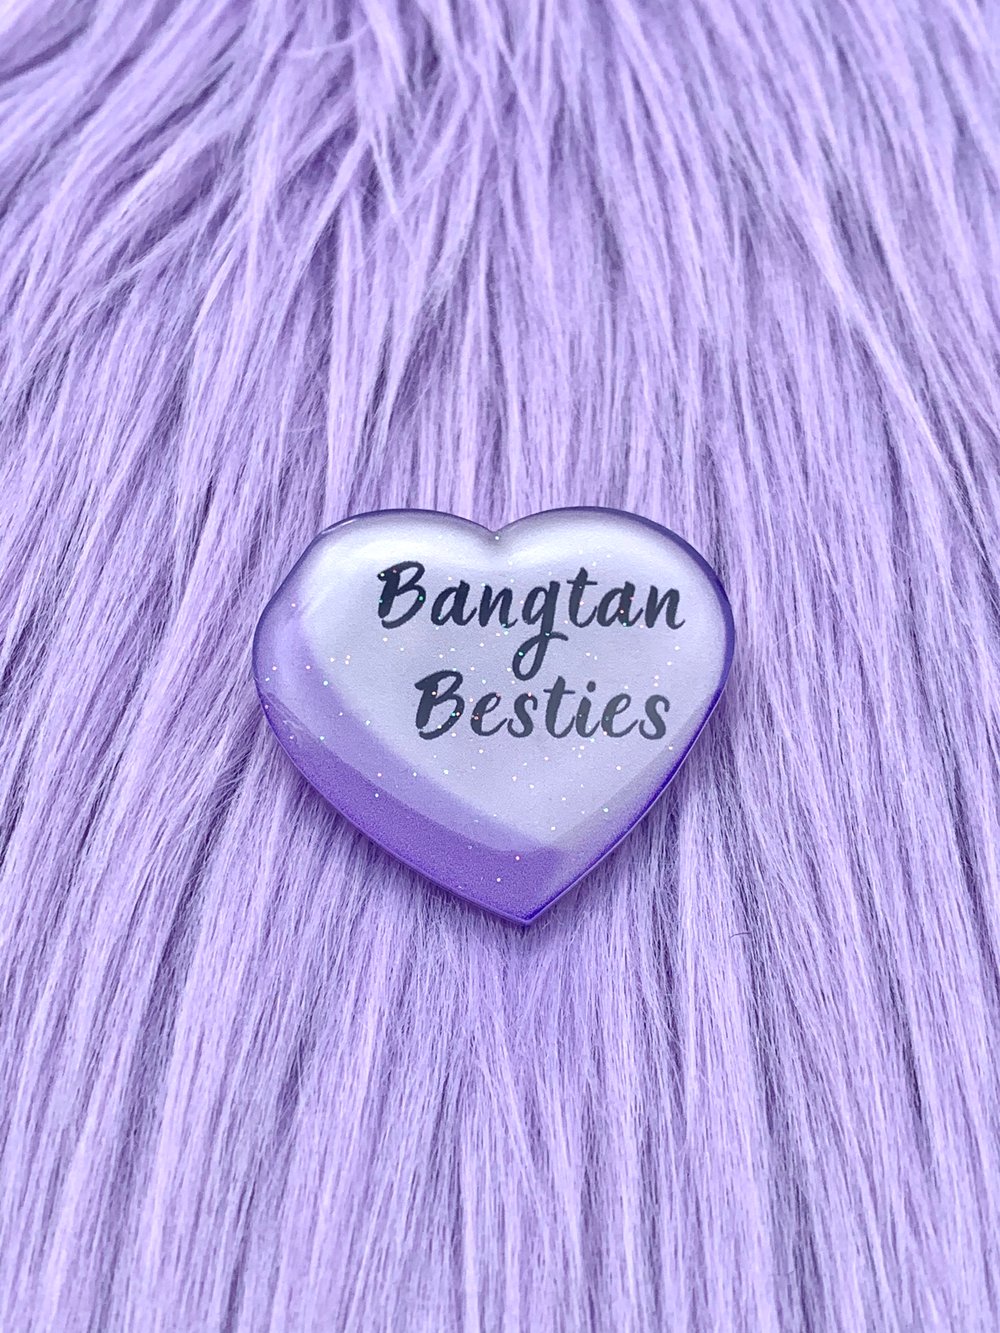 Bangtan Besties Acrylic Pin 